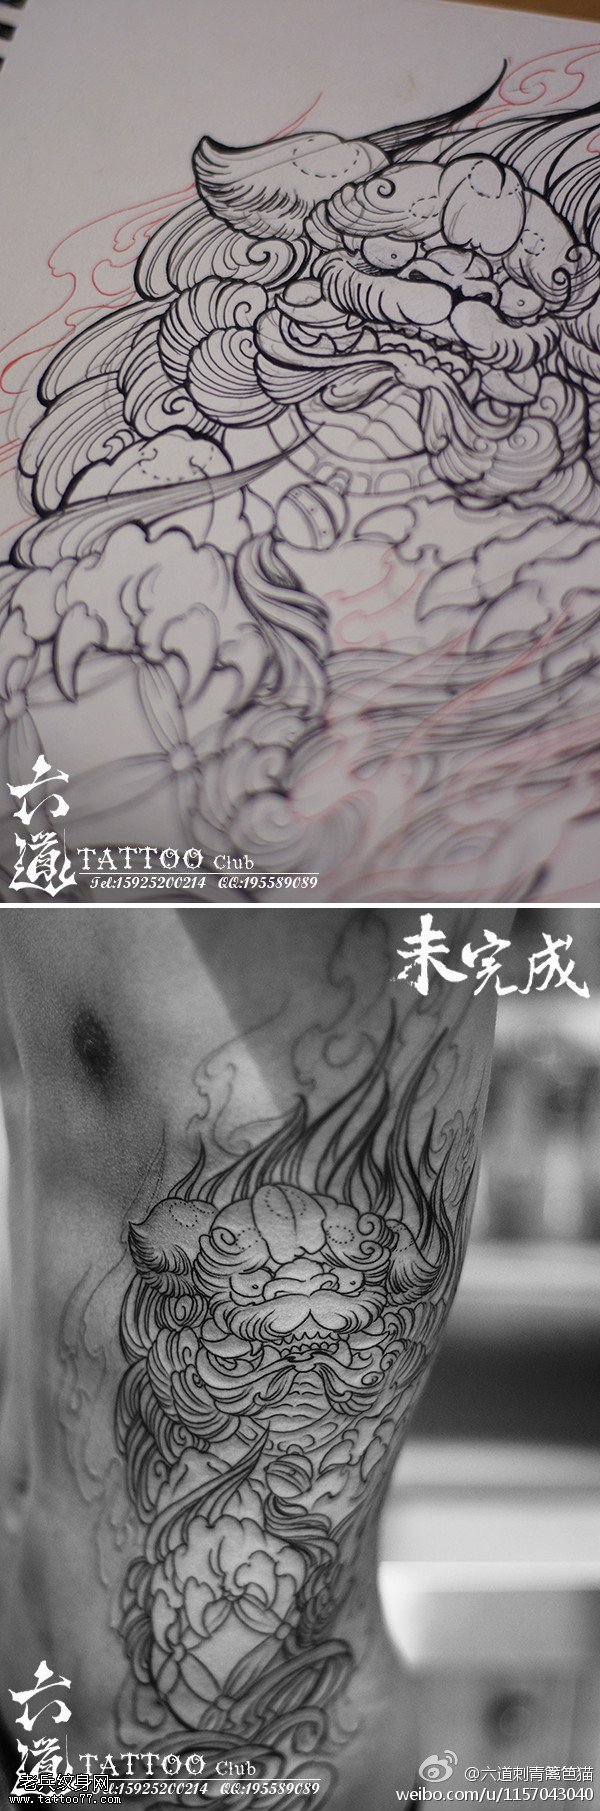 超cool中国风腰部唐狮纹身图案